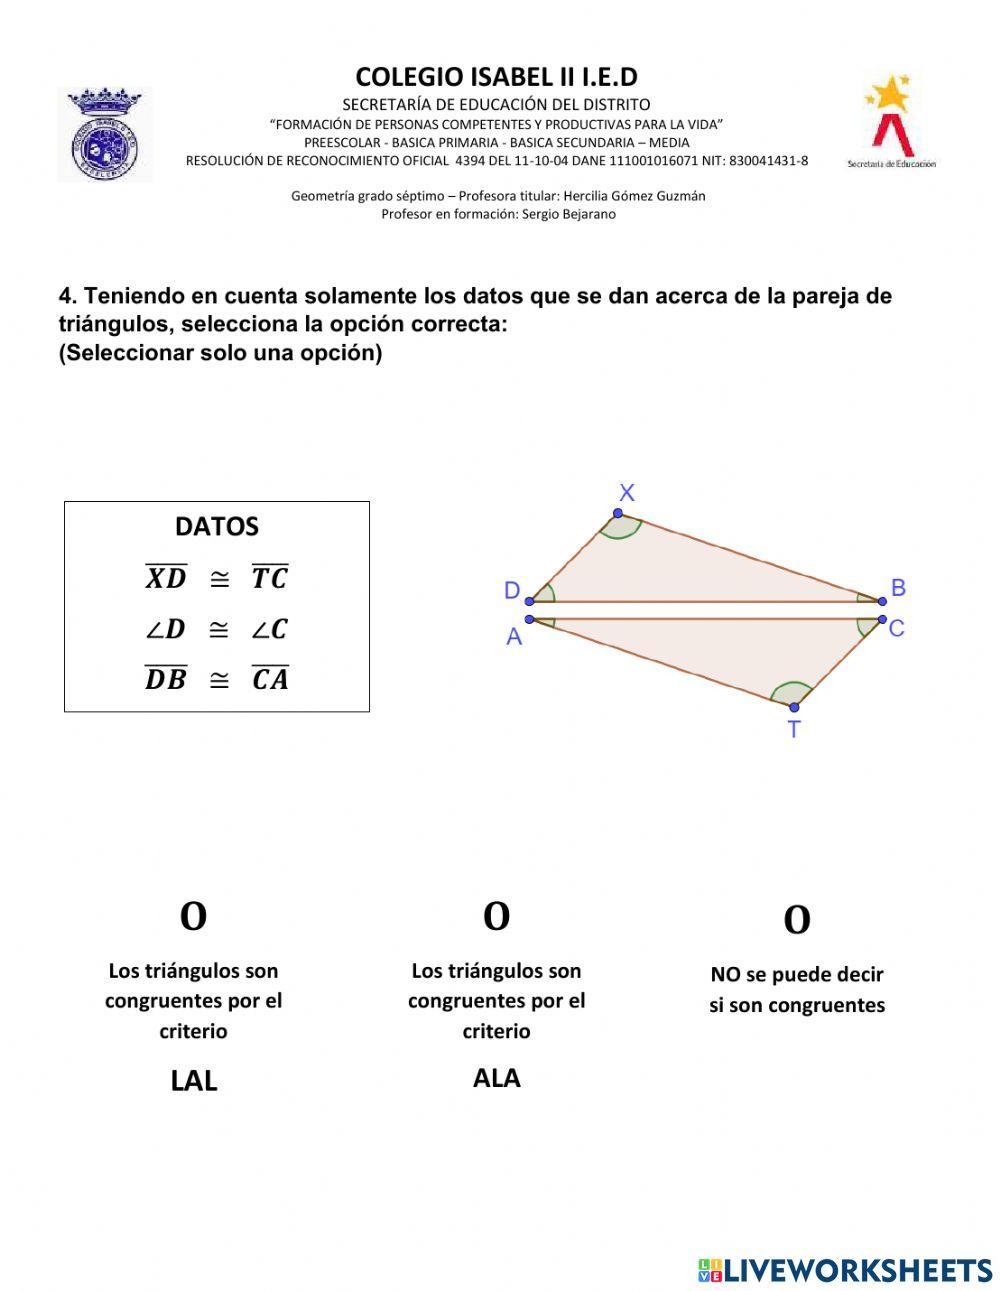 Criterios de Congruencia Triángulos 703